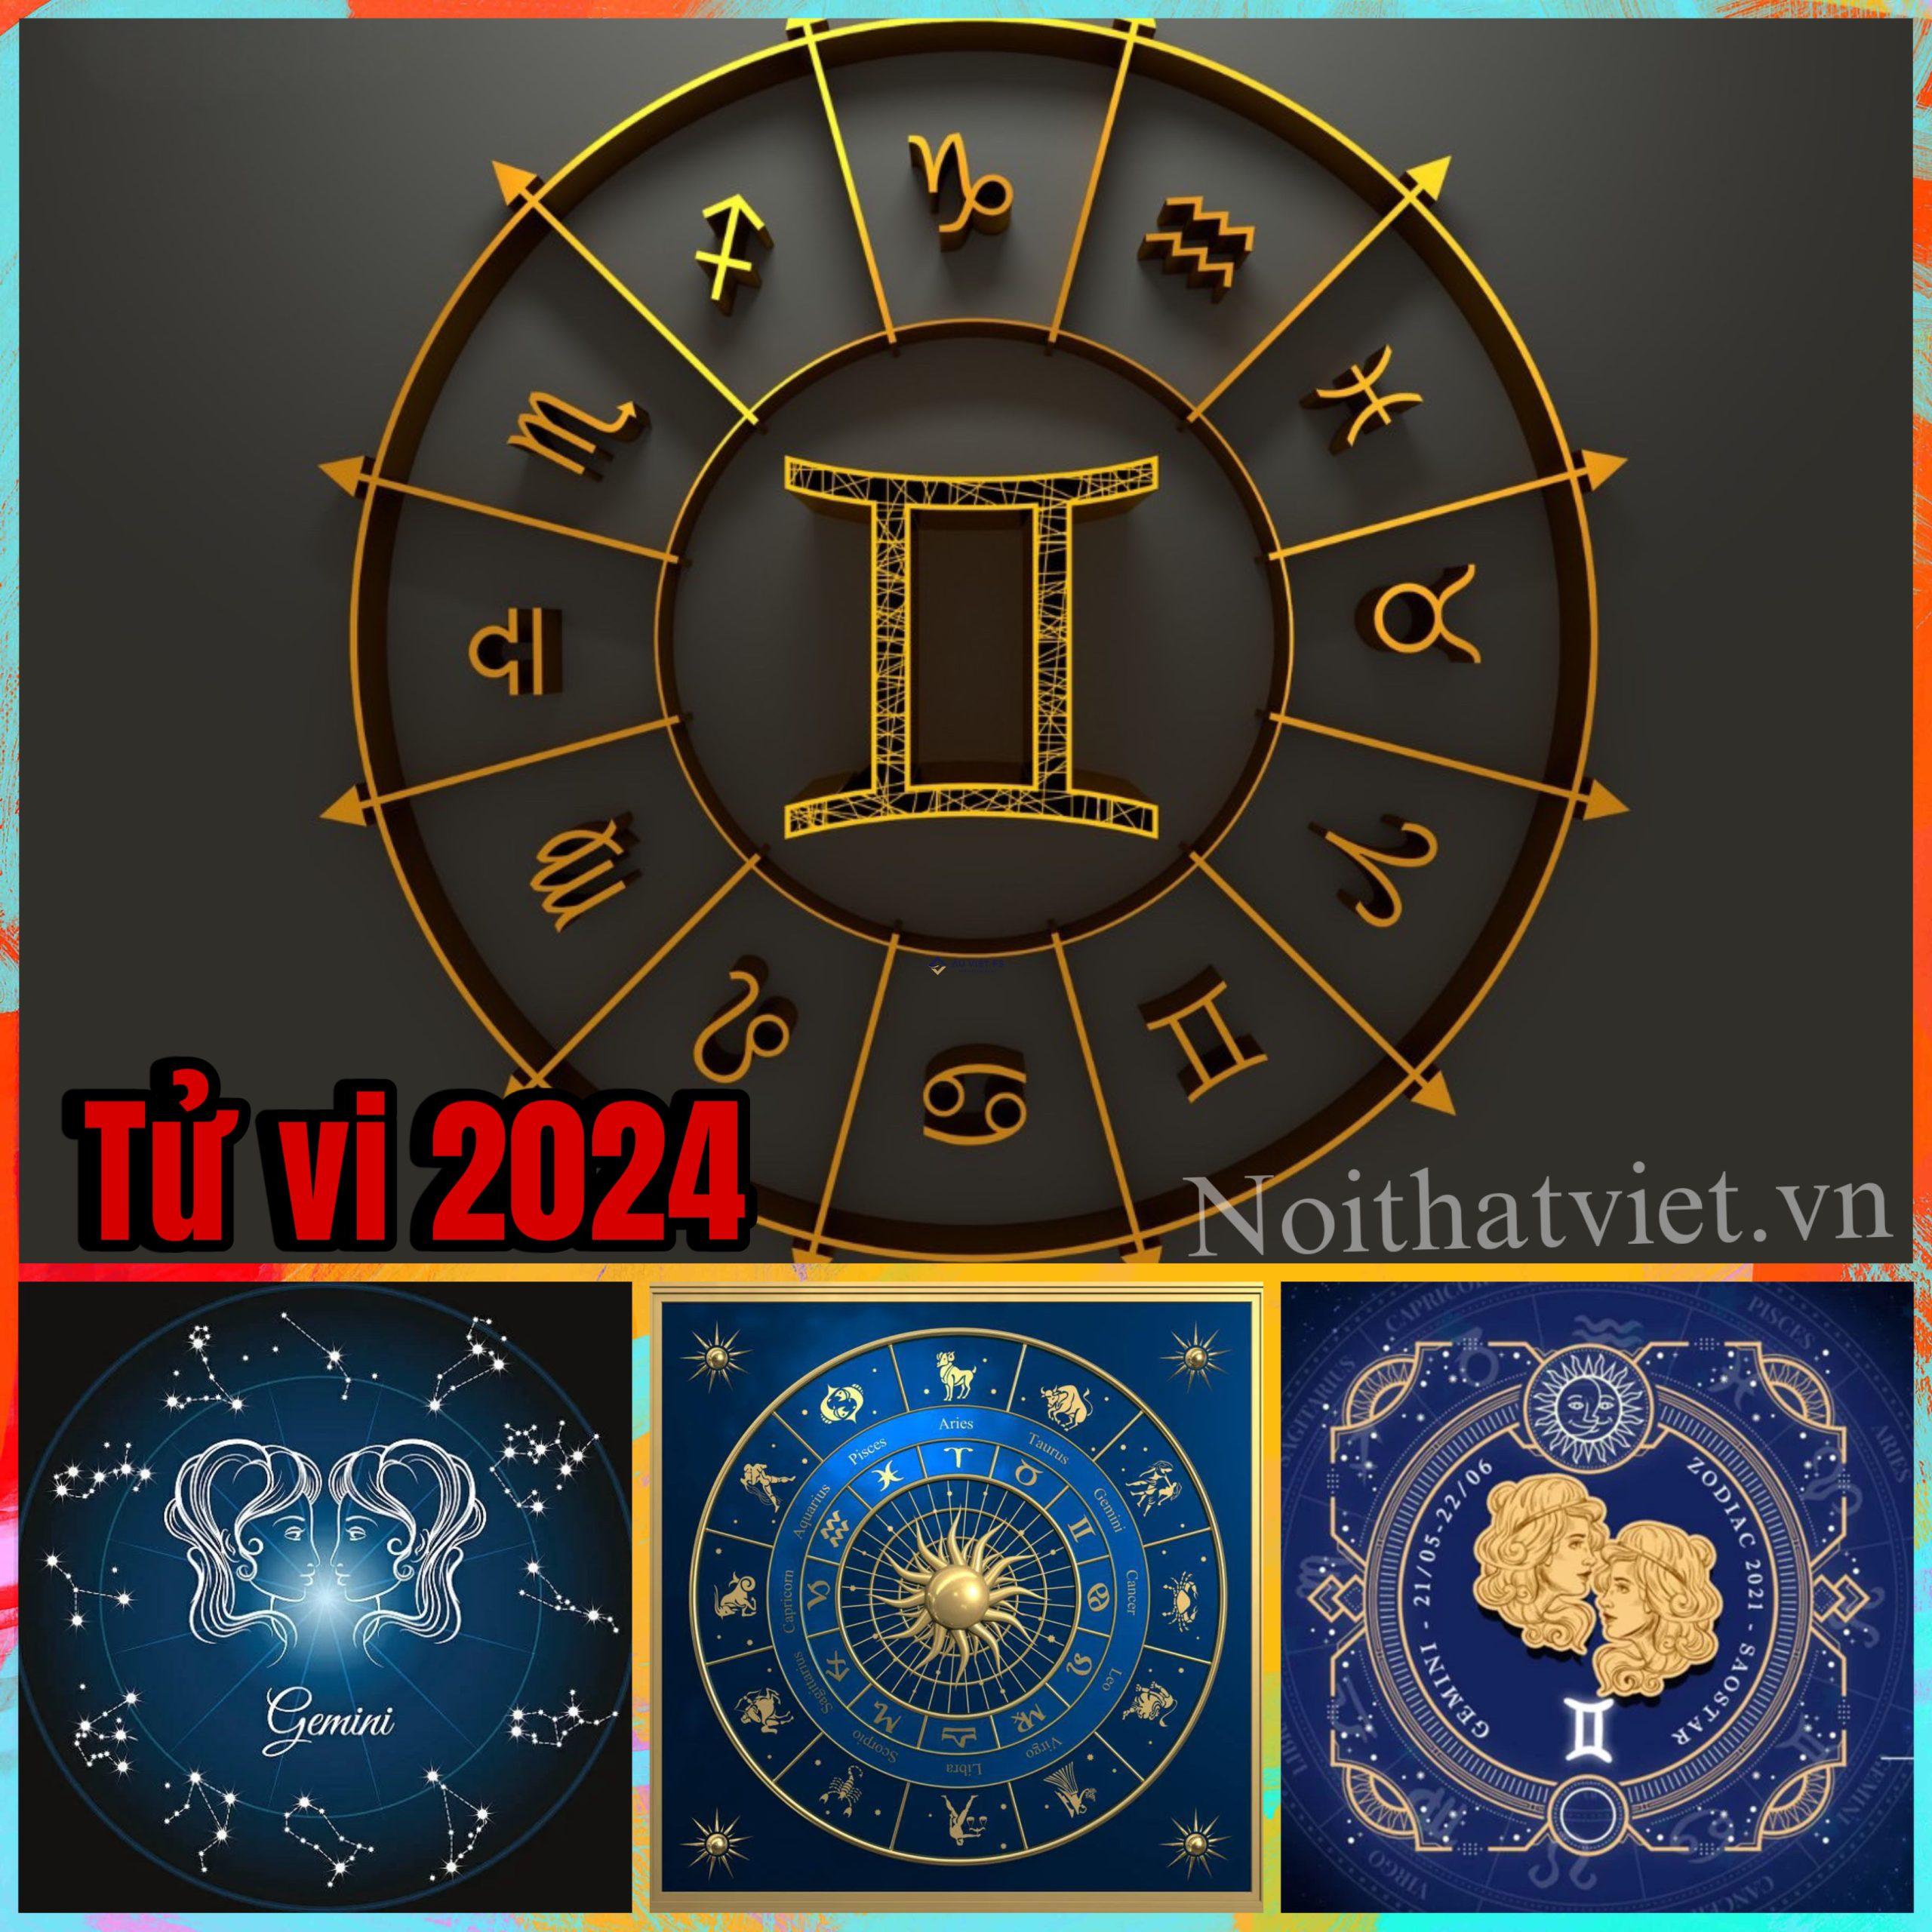 Tử vi cung Song Tử 2024, Tử vi 2024, Song Tử, Cung Song Tử, Xem tử vi, 12 cung hoàng đạo, Xem tử vi 2024, Bói tình yêu, Màu may mắn, Tử vi 2024, horoscope, horoscope 2024, 星占い 2024, 2024 年の運勢を見る, 2024년 운세 보기, 운이 좋은 2024, Ver horóscopo 2024, Horoscope For 2024, 2024 Yearly Horoscope, Horóscopo para 2024, 2024 年の星占い, 2024년 운세, ดูดวงปี 2567, Oroscopo 2024, Horoscope annuel de 2024